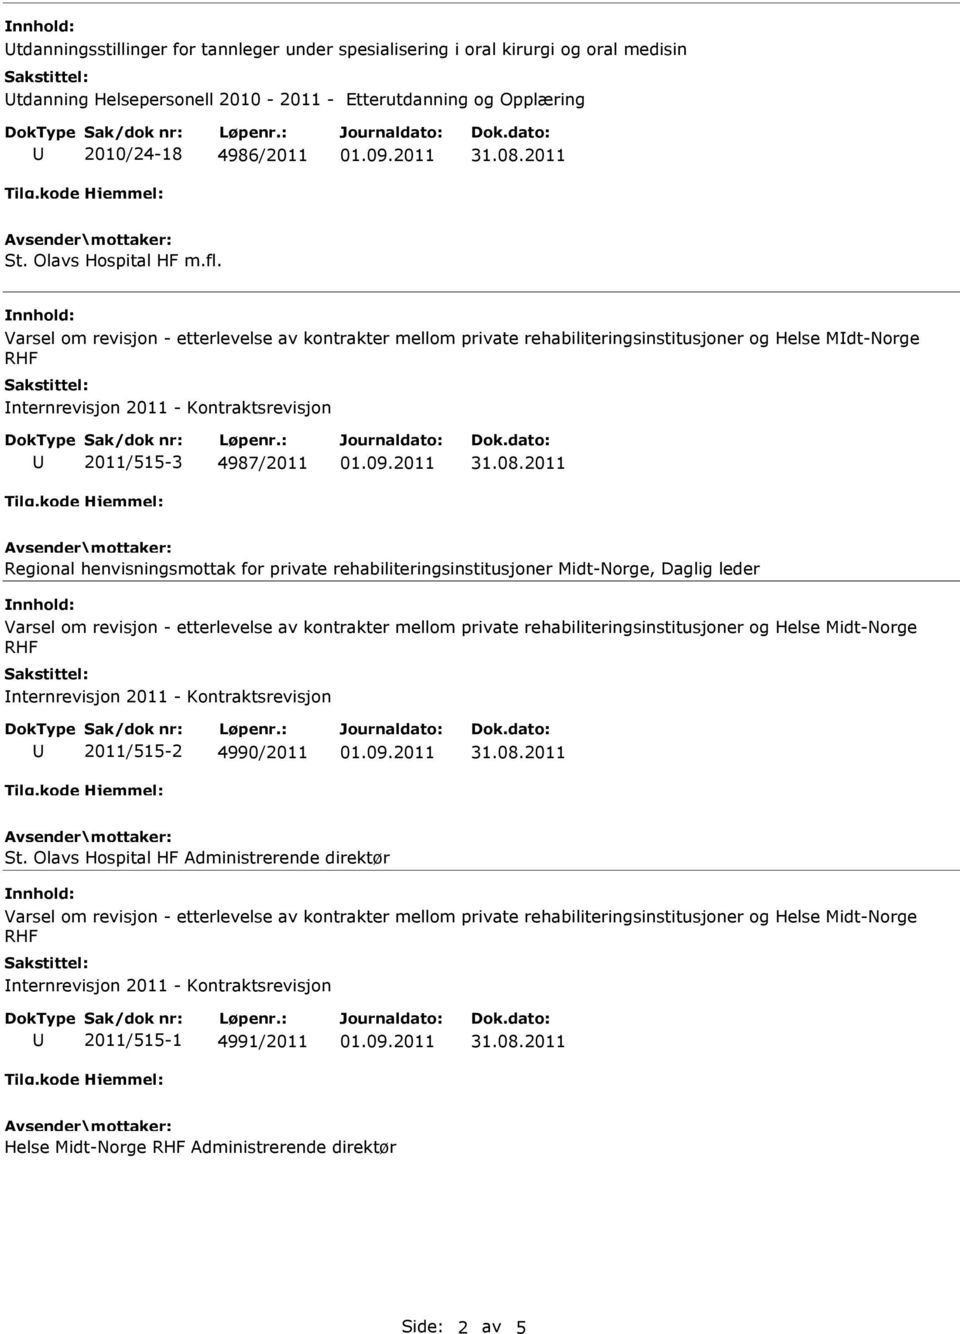 Varsel om revisjon - etterlevelse av kontrakter mellom private rehabiliteringsinstitusjoner og Helse Mdt-Norge nternrevisjon 2011 - Kontraktsrevisjon 2011/515-3 4987/2011